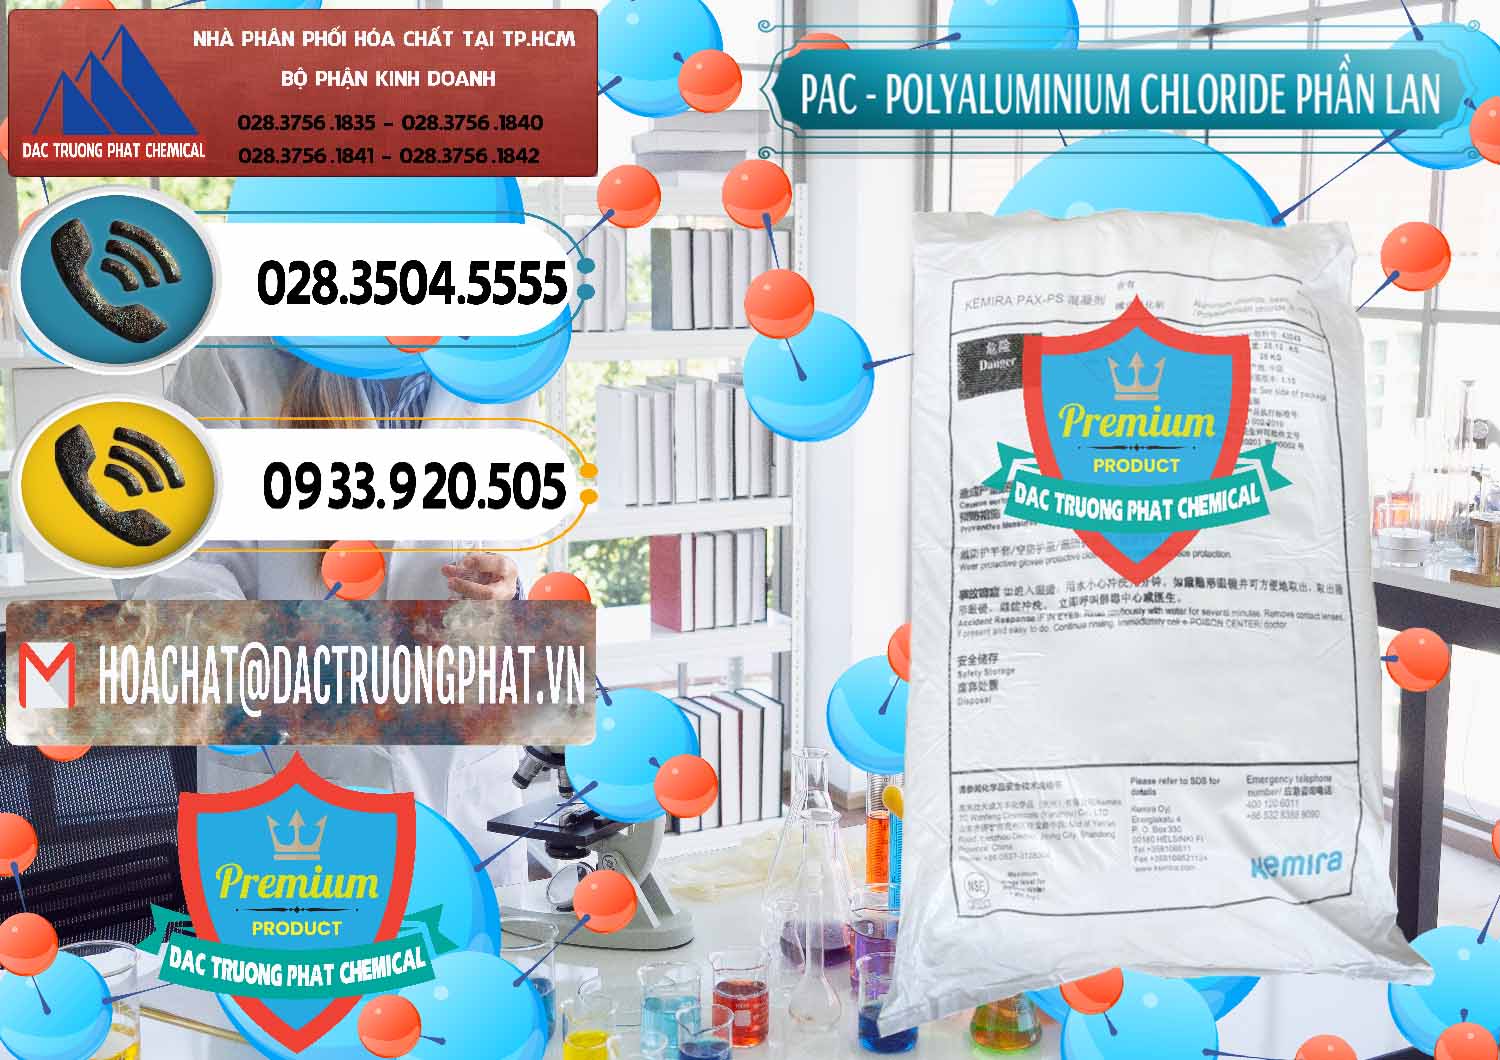 Chuyên cung cấp và bán PAC - Polyaluminium Chloride Phần Lan Finland - 0383 - Nhà cung ứng & phân phối hóa chất tại TP.HCM - hoachatdetnhuom.vn